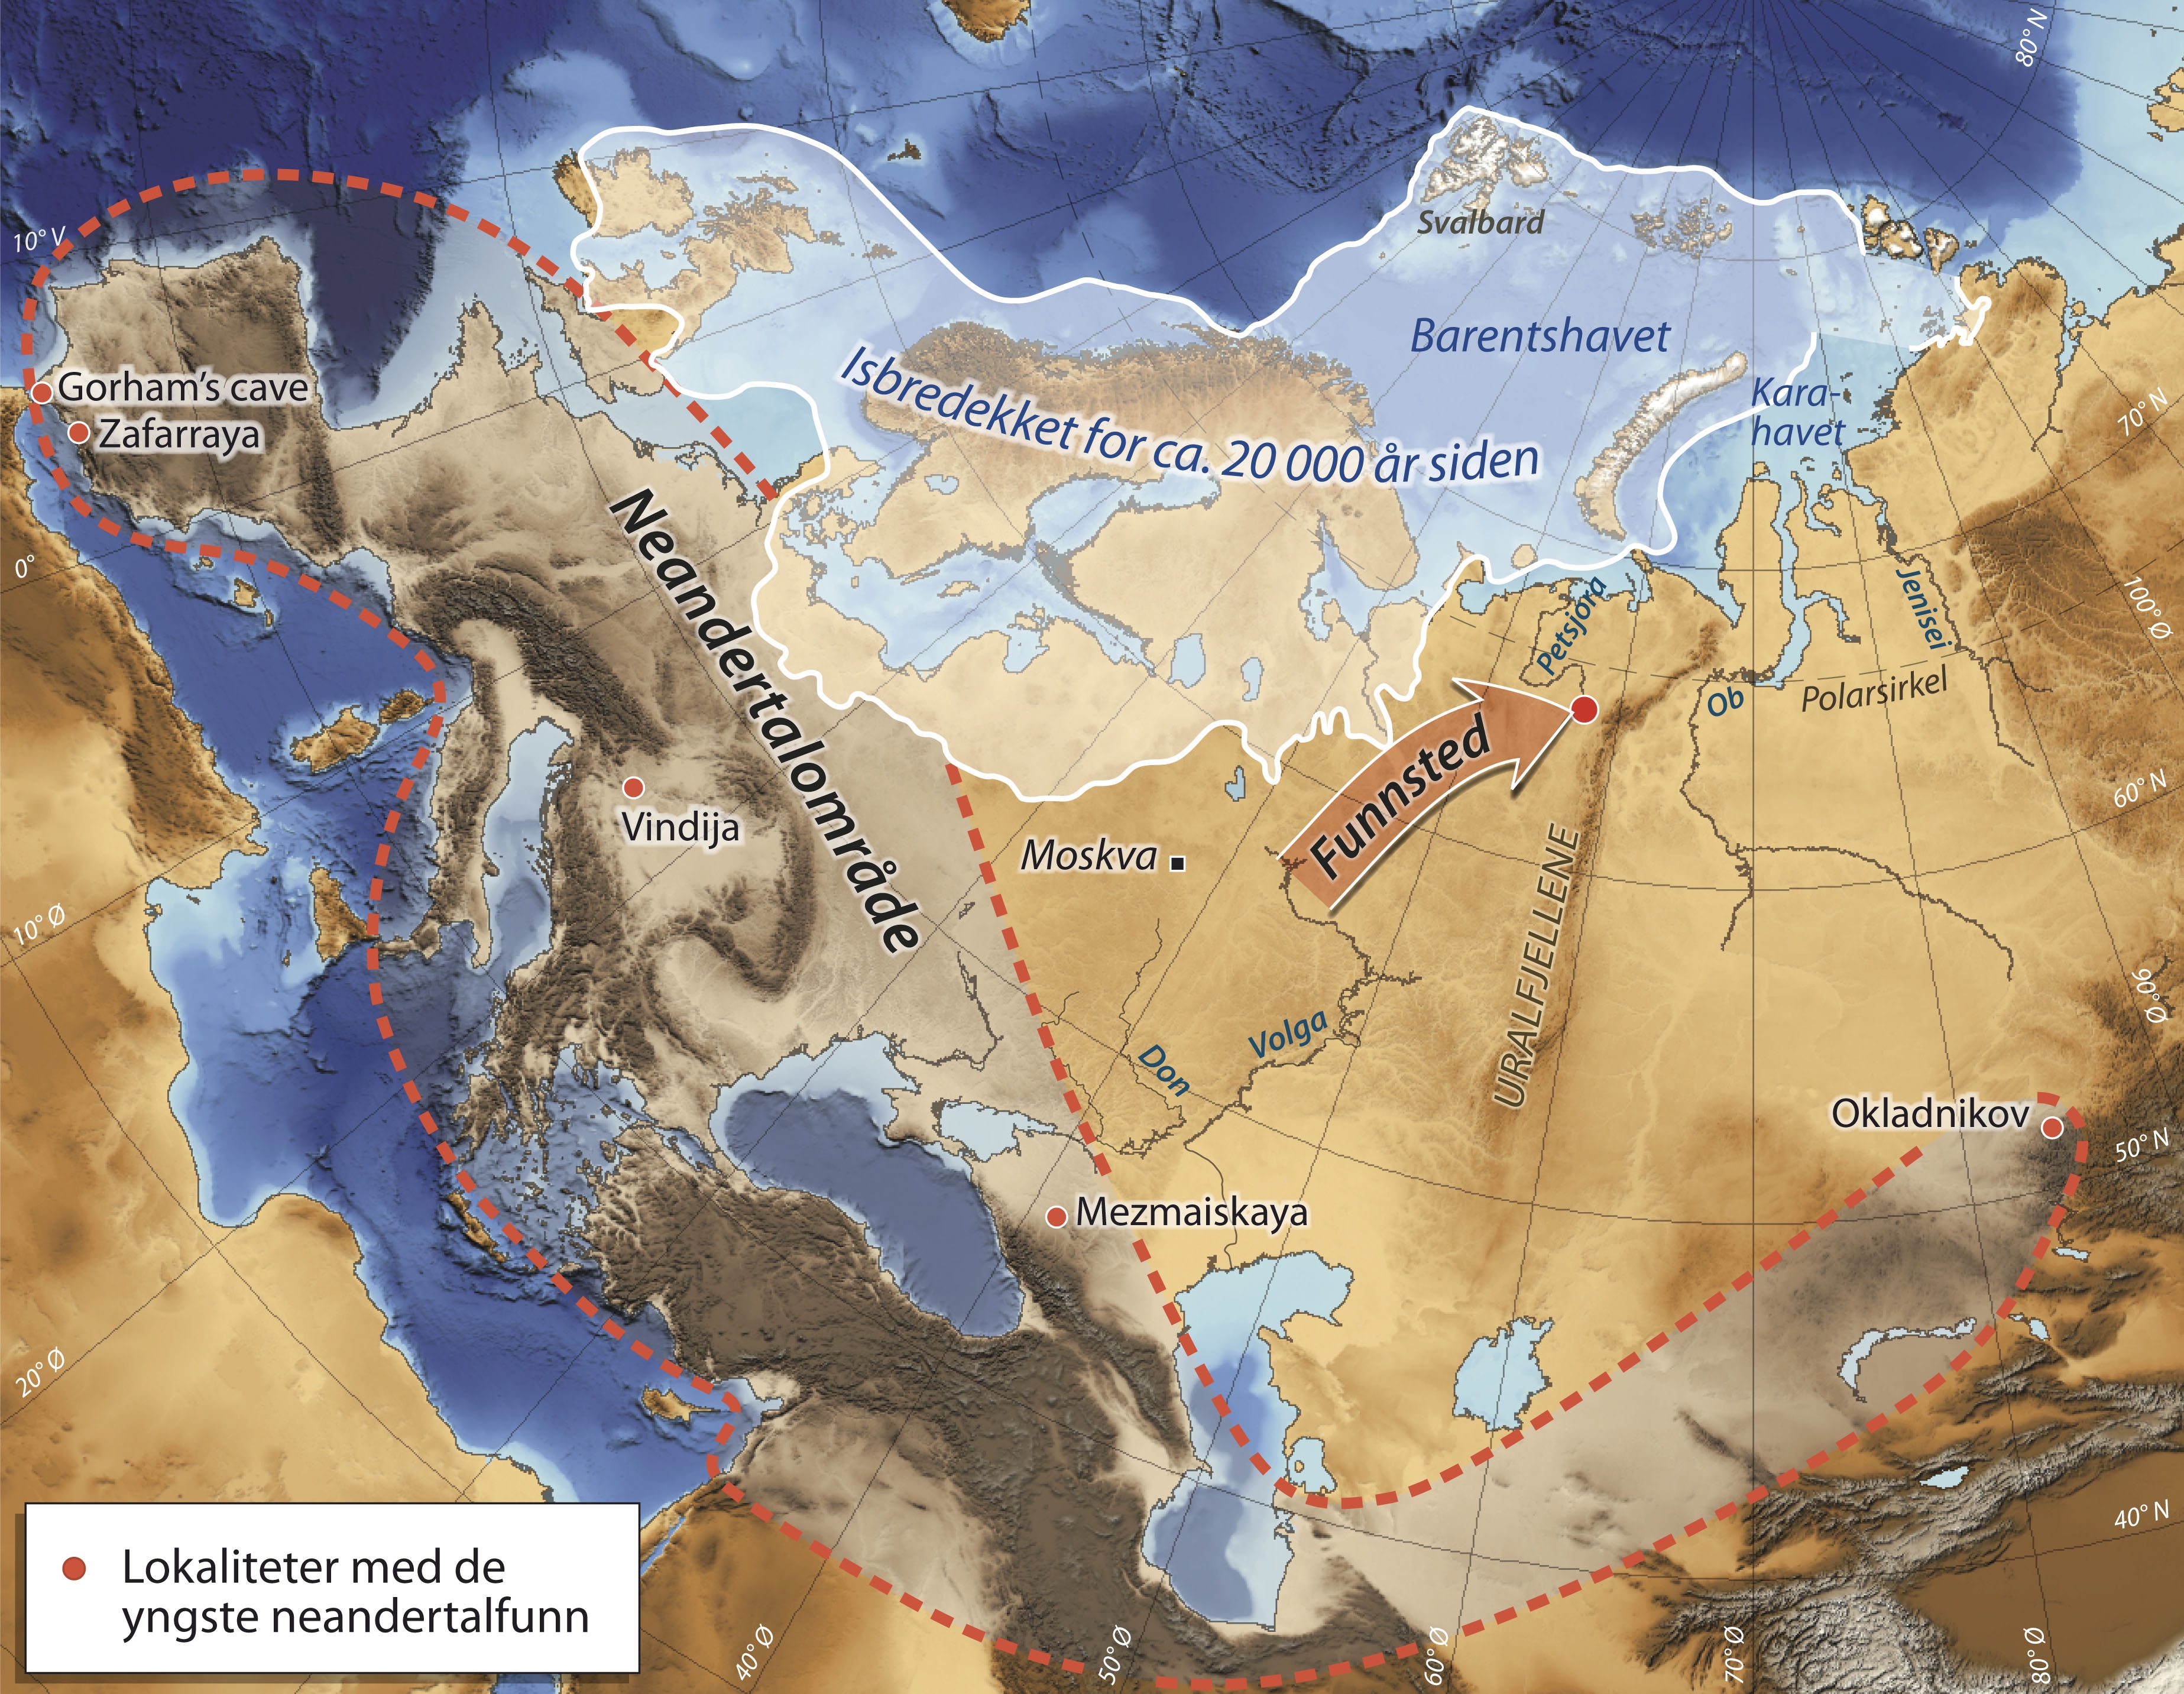 Древнейшие северной евразии. Древнее море. Расселение неандертальцев. Стоянки неандертальцев на карте. Карта расселения неандертальцев.